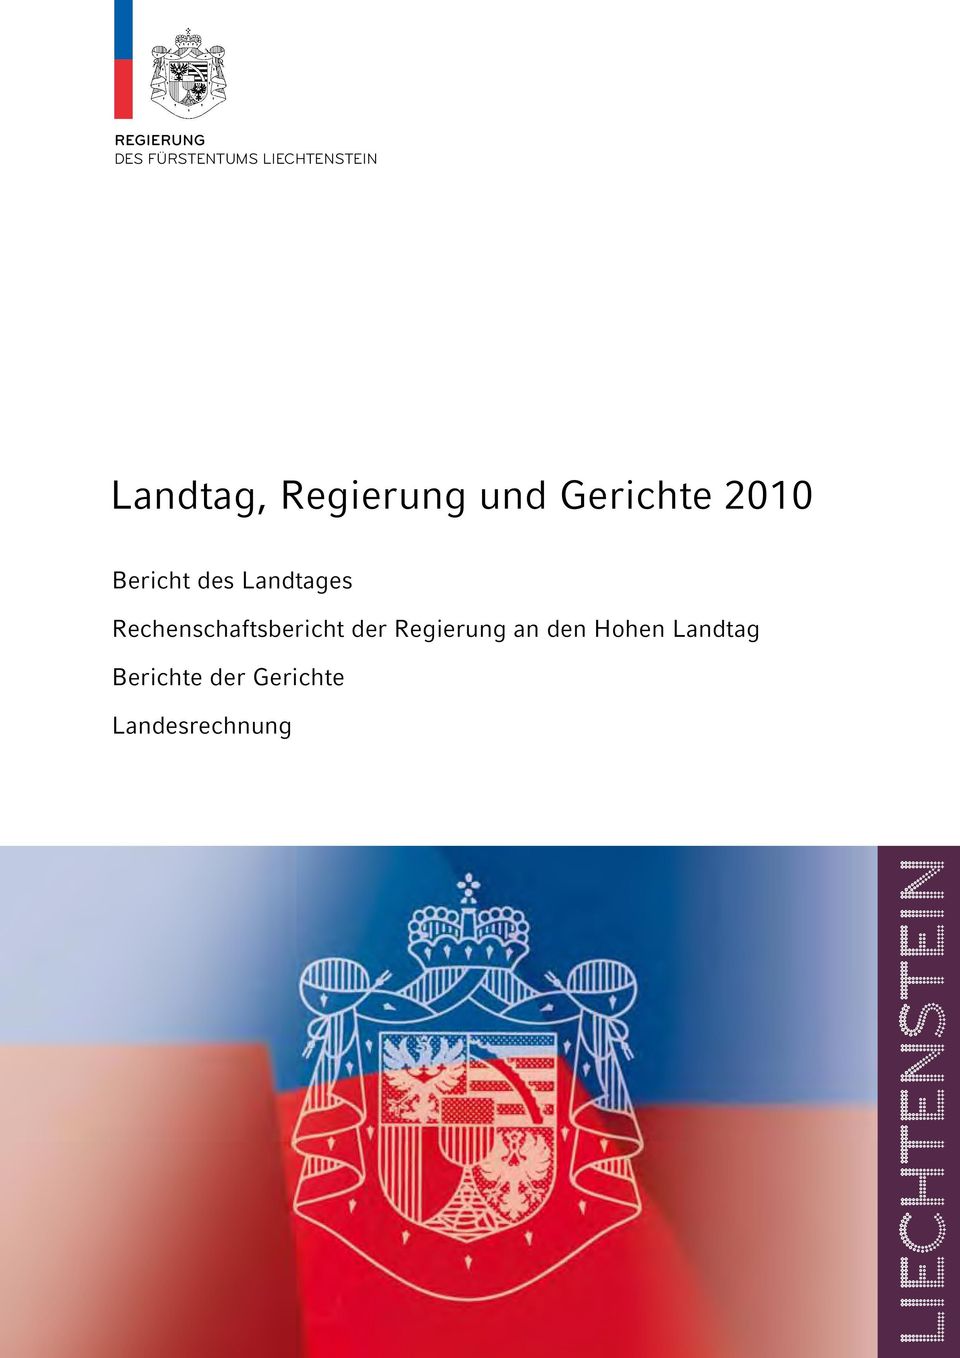 Landtages Rechenschaftsbericht der Regierung an